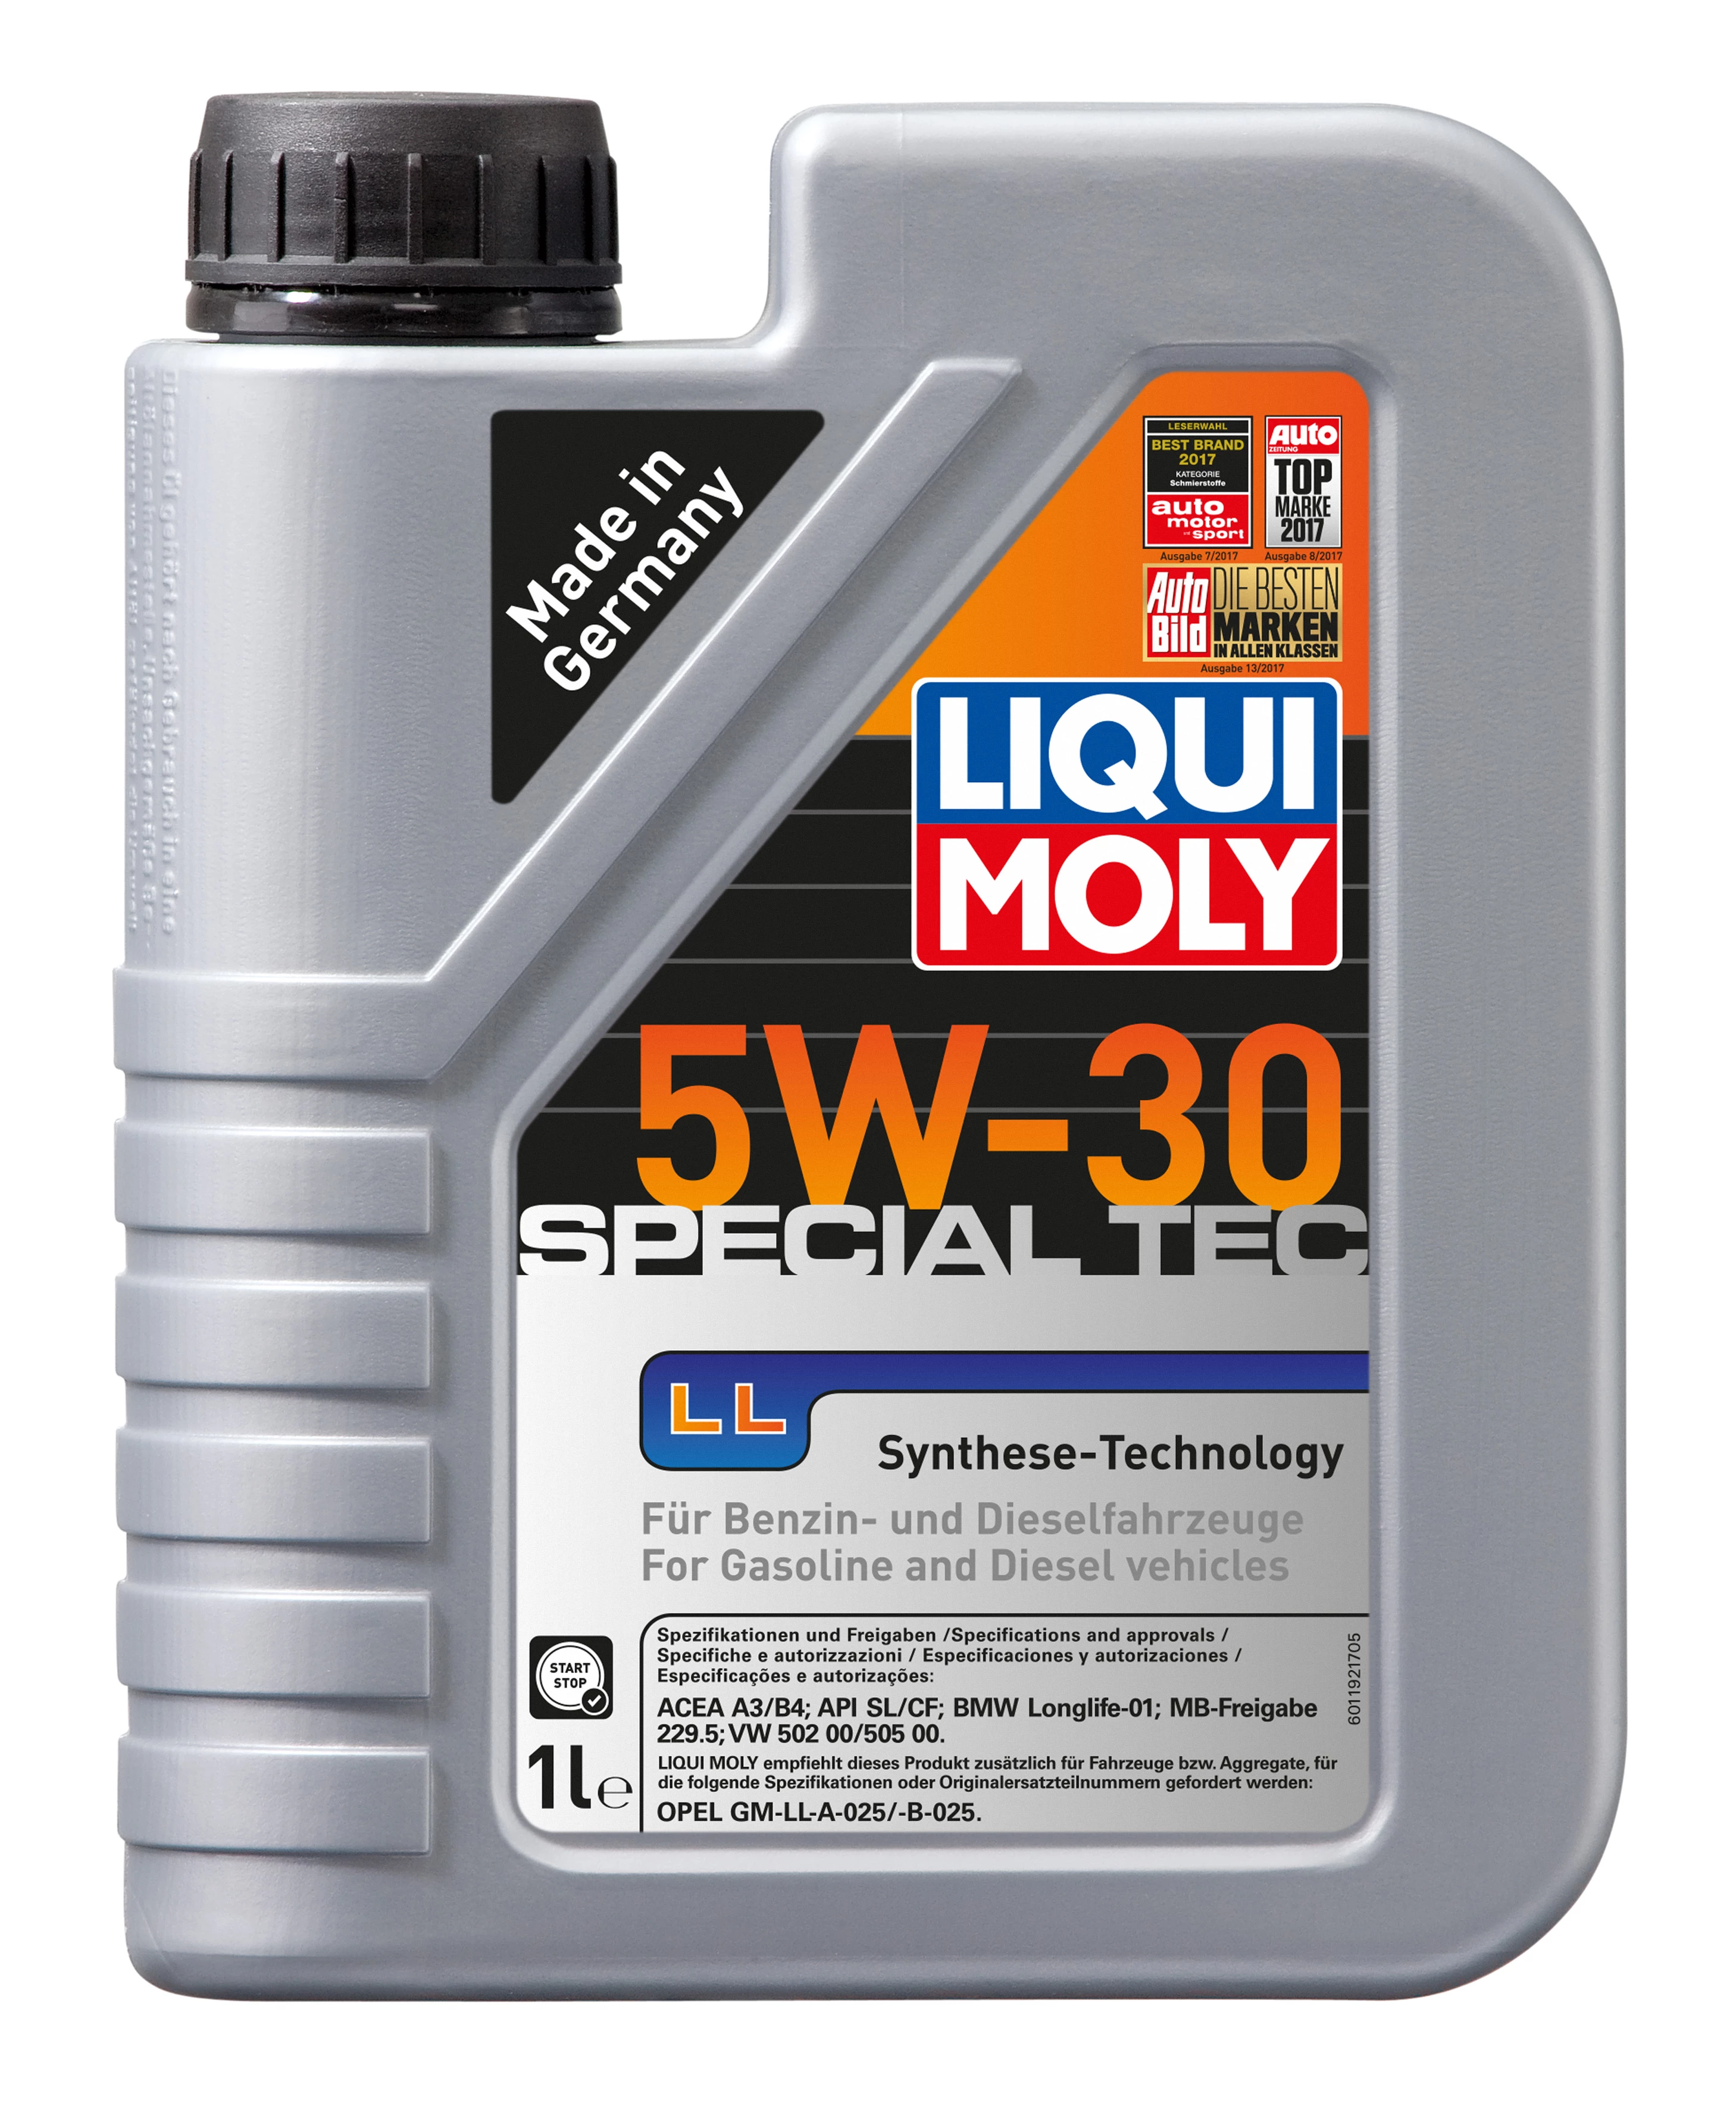  1192 LiquiMoly НС-синтетическое моторное масло Special Tec LL 5W-30 1л 